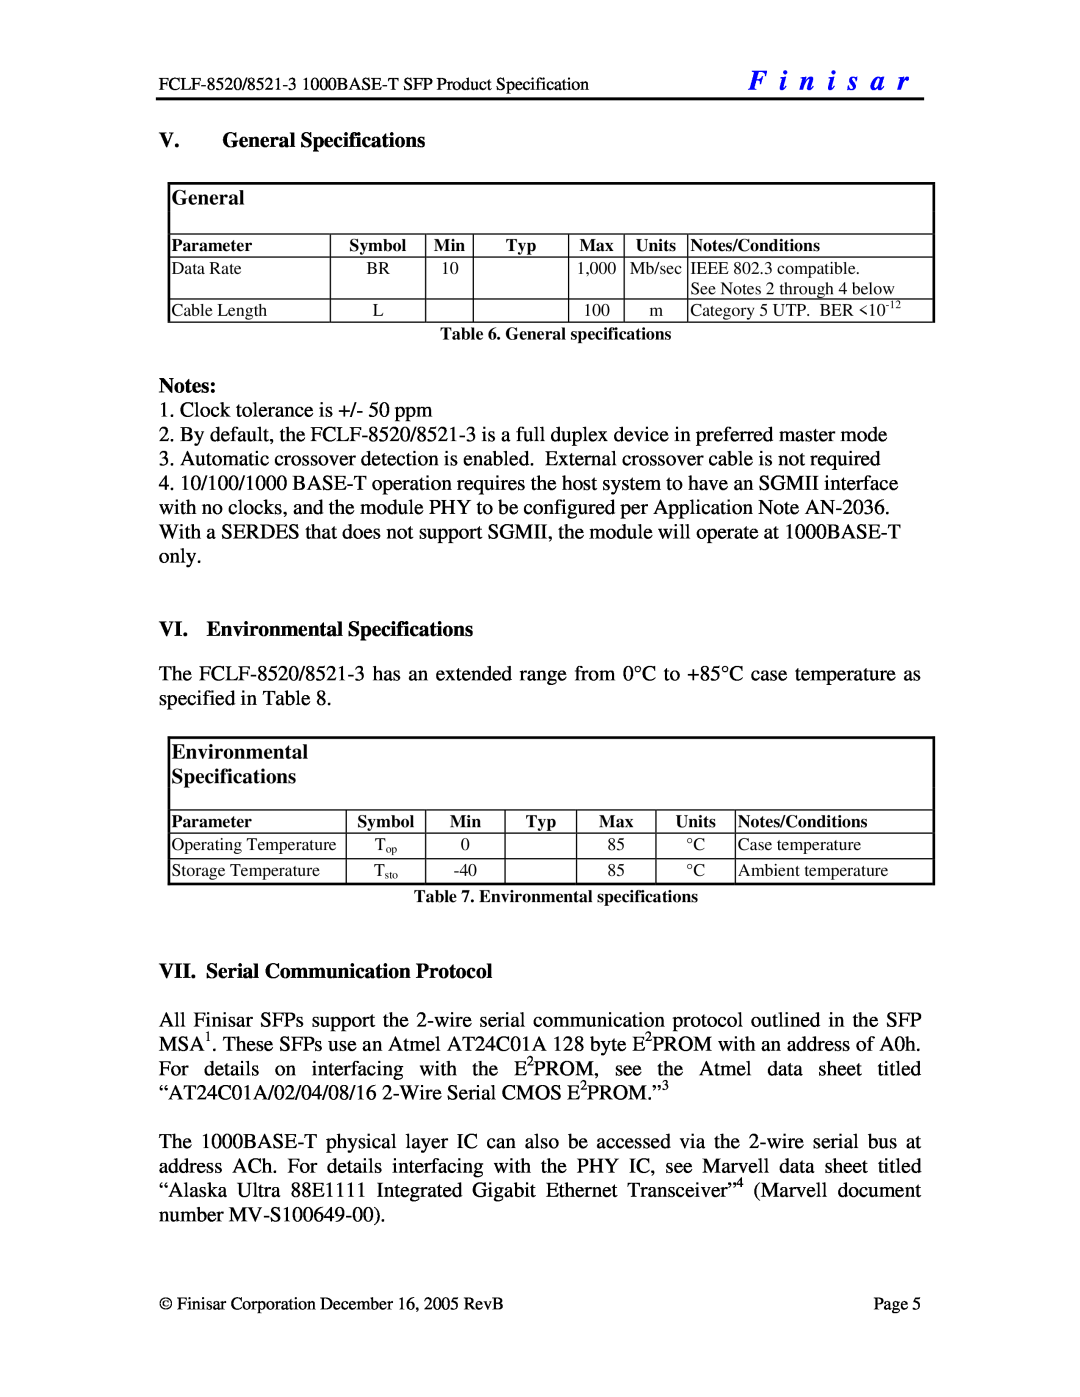 Finisar FCLF-8521-3 manual V. General Specifications General, VI. Environmental Specifications, F i n i s a r 